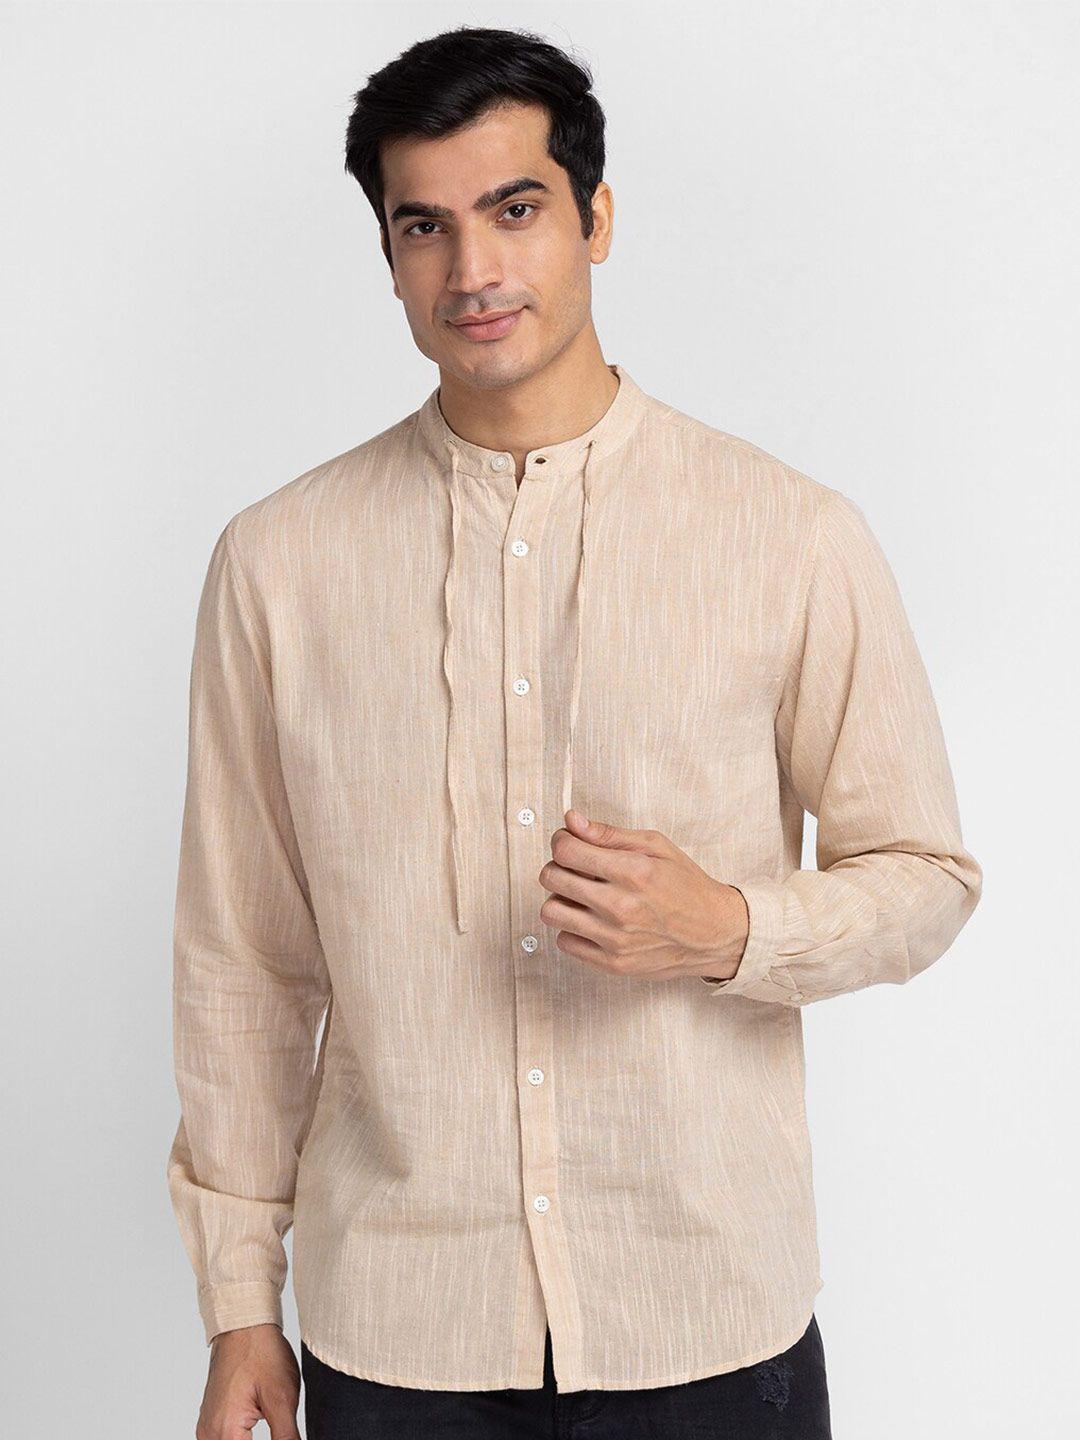 globus-men-beige-pure-cotton-casual-shirt